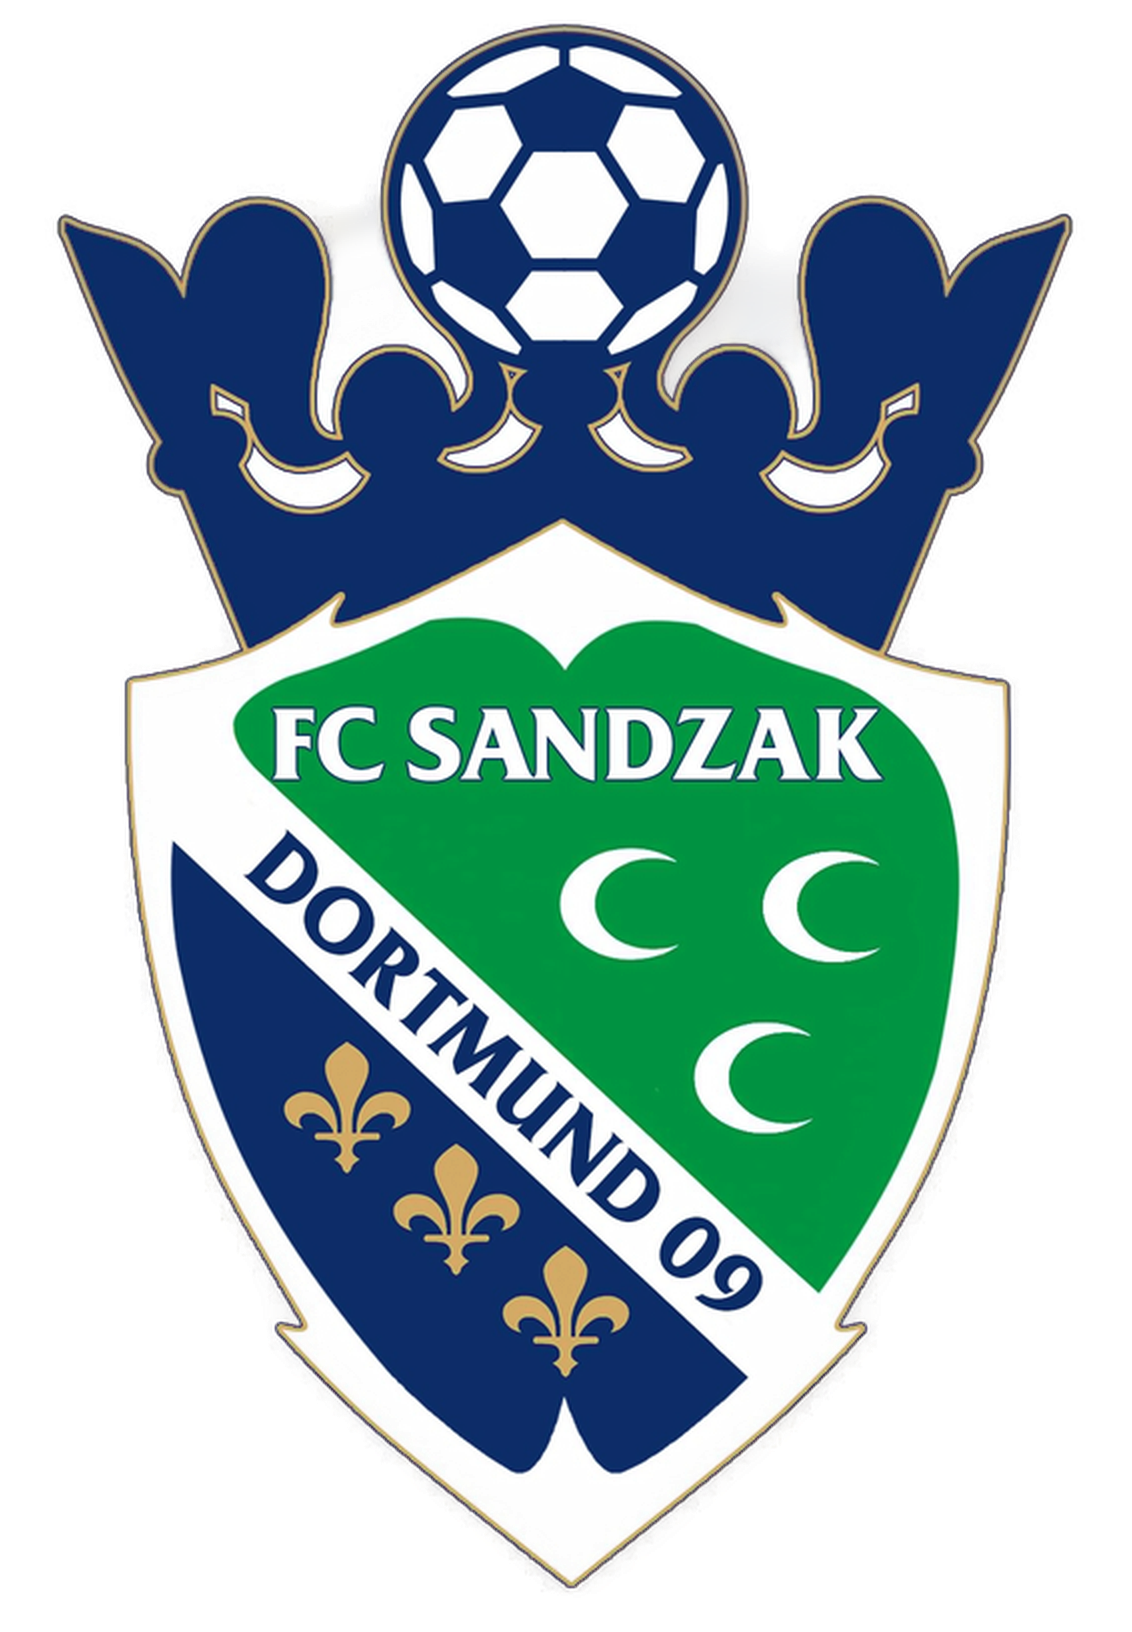 Wappen FC Sandzak Dortmund 2009  15913